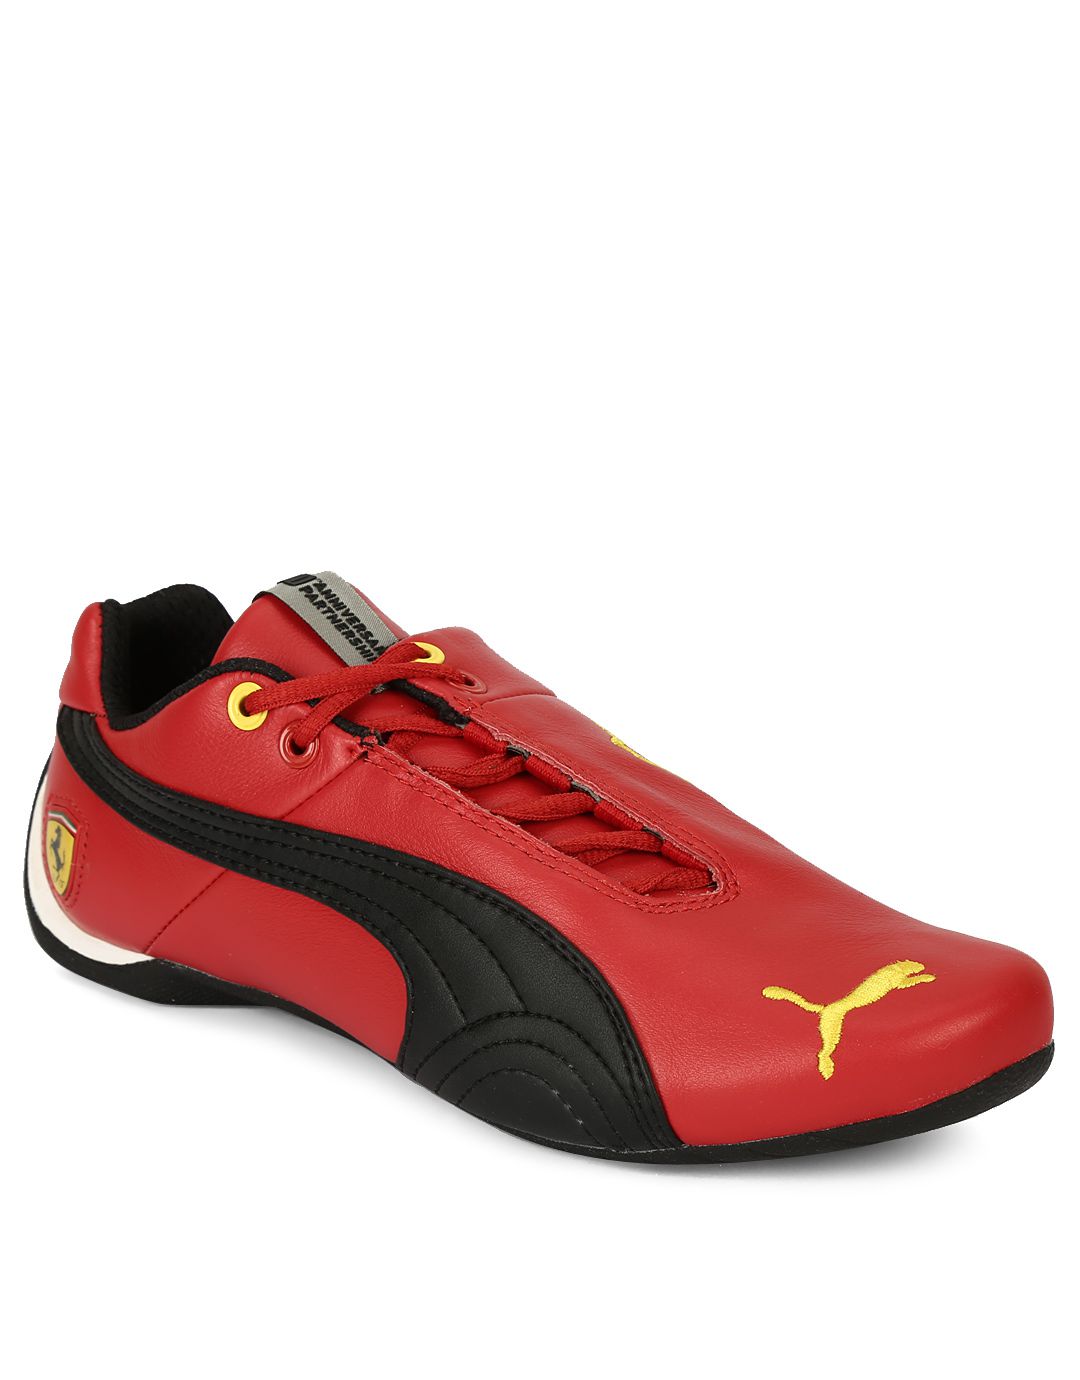 Puma Red Ferrari Casual Shoes Price in India- Buy Puma Red Ferrari Casual Shoes Online at Snapdeal